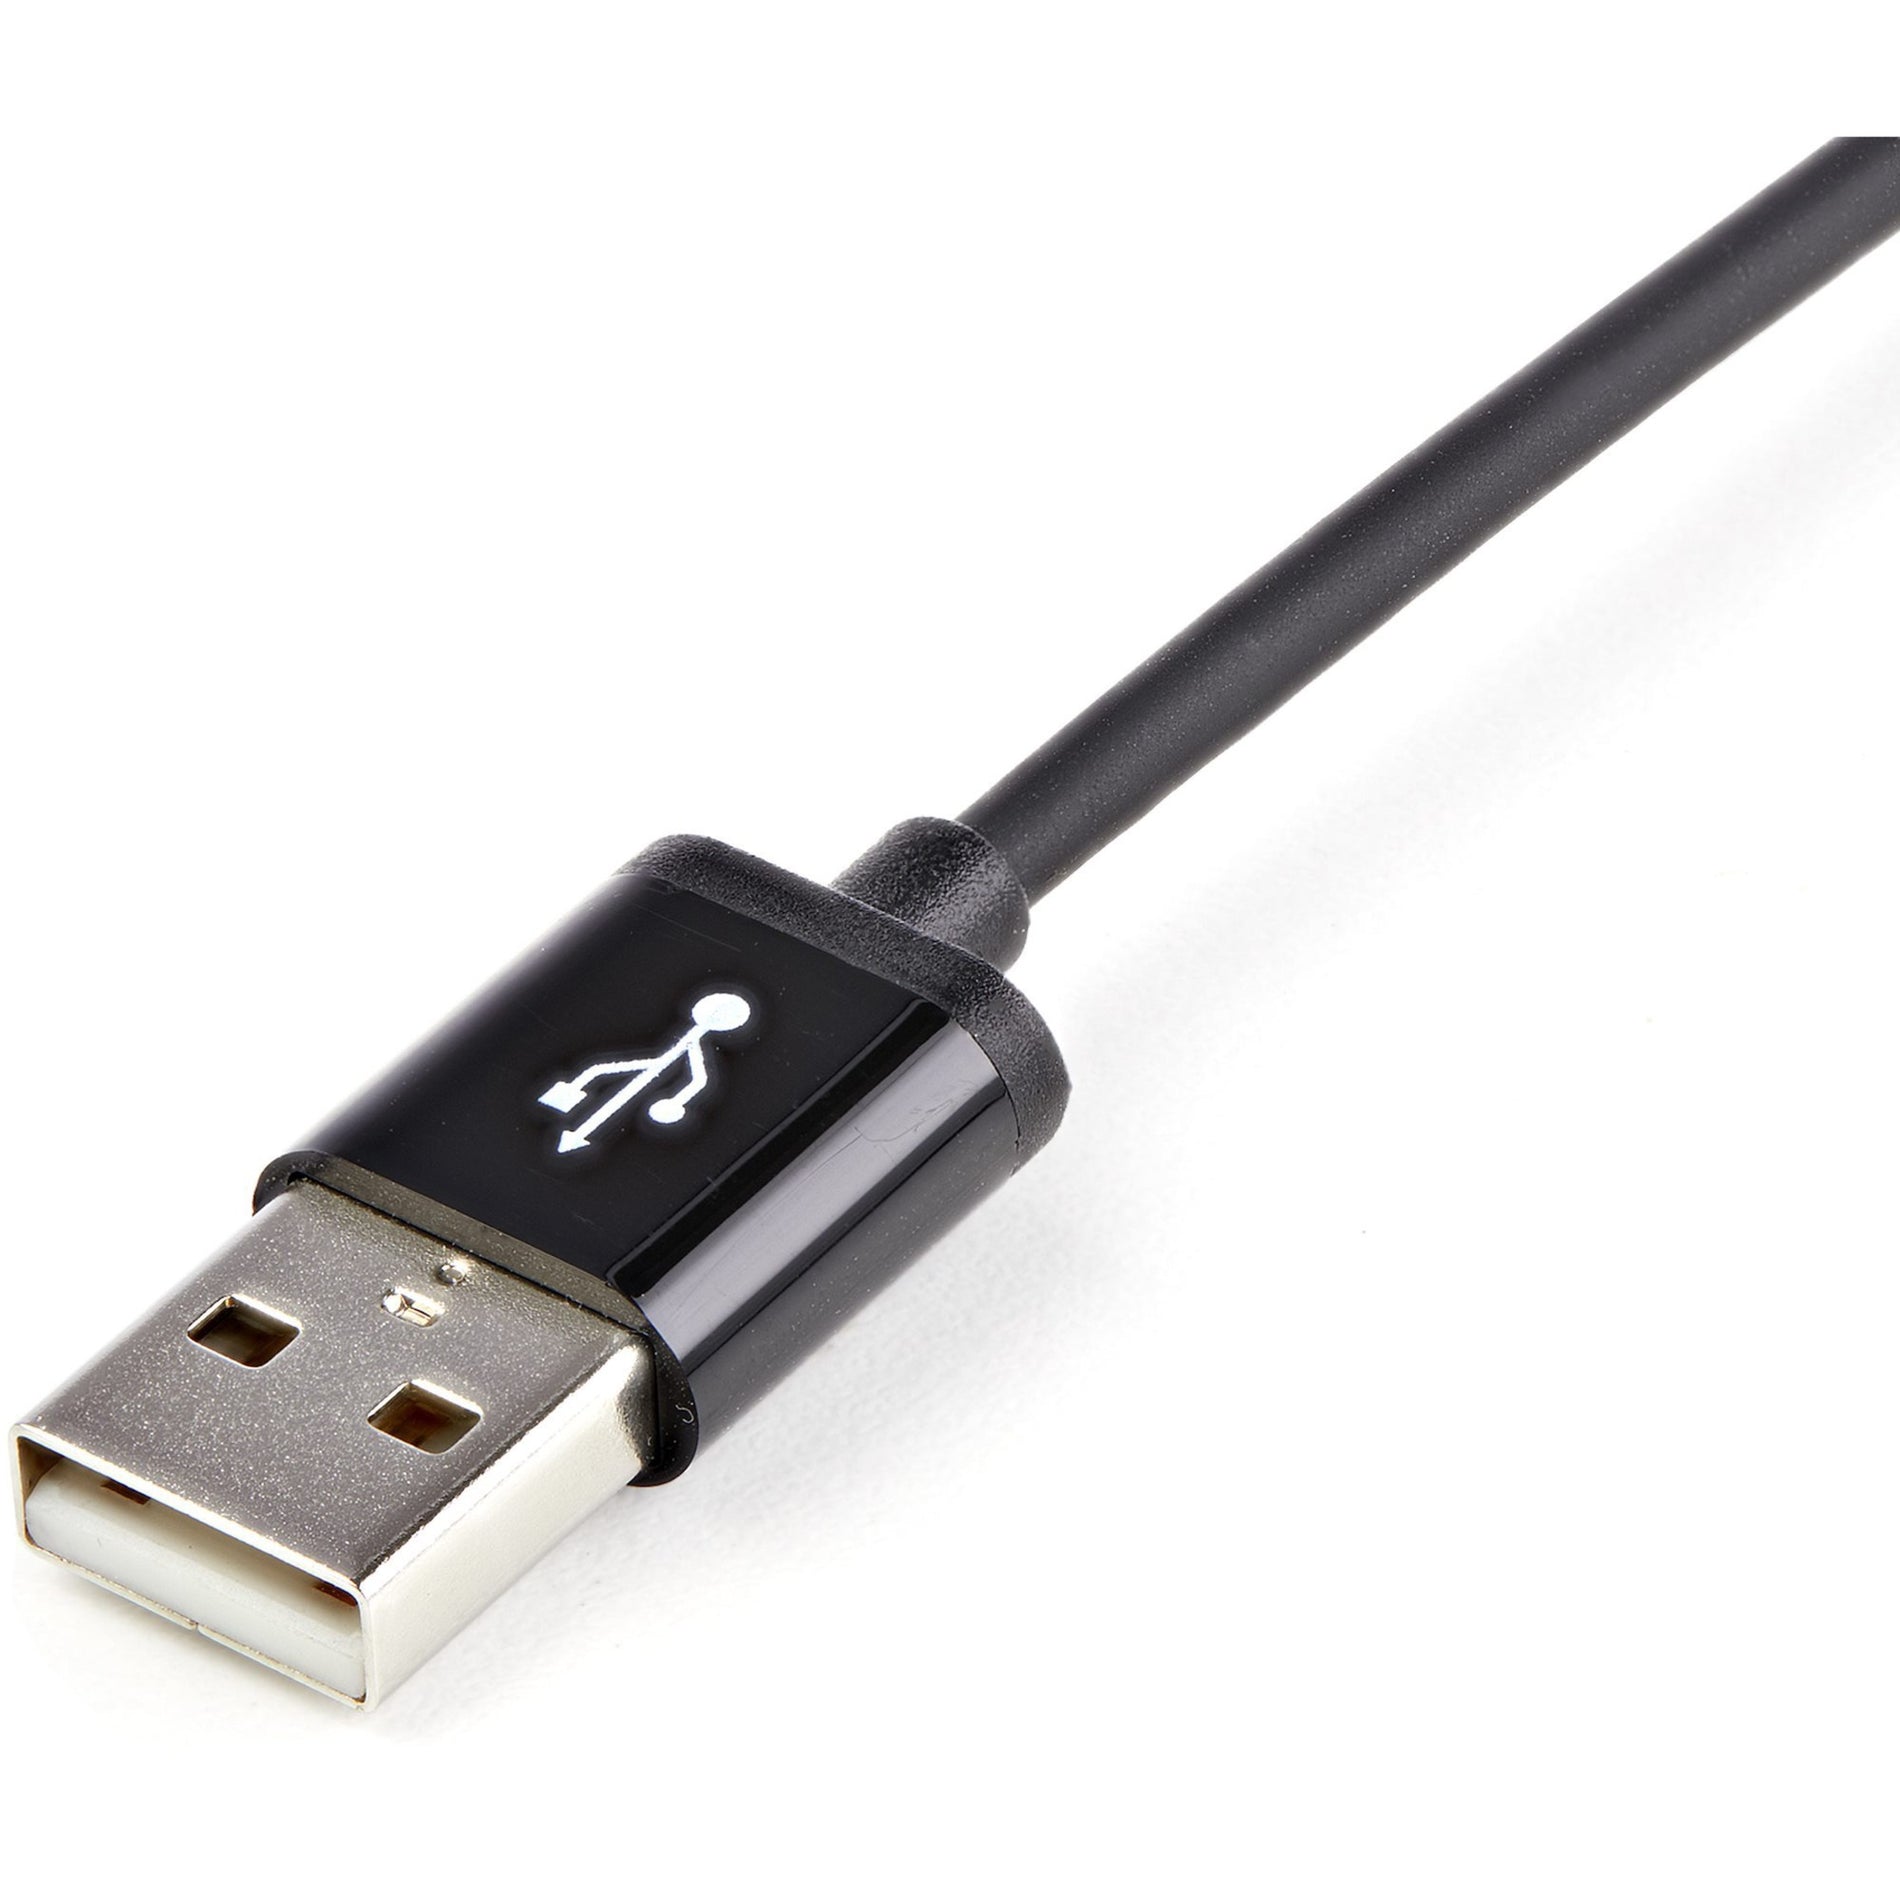 كبل نقل بيانات وشحن Lightning/USB USBLT2MB من StarTech.com، بطول 6 أقدام، أسود